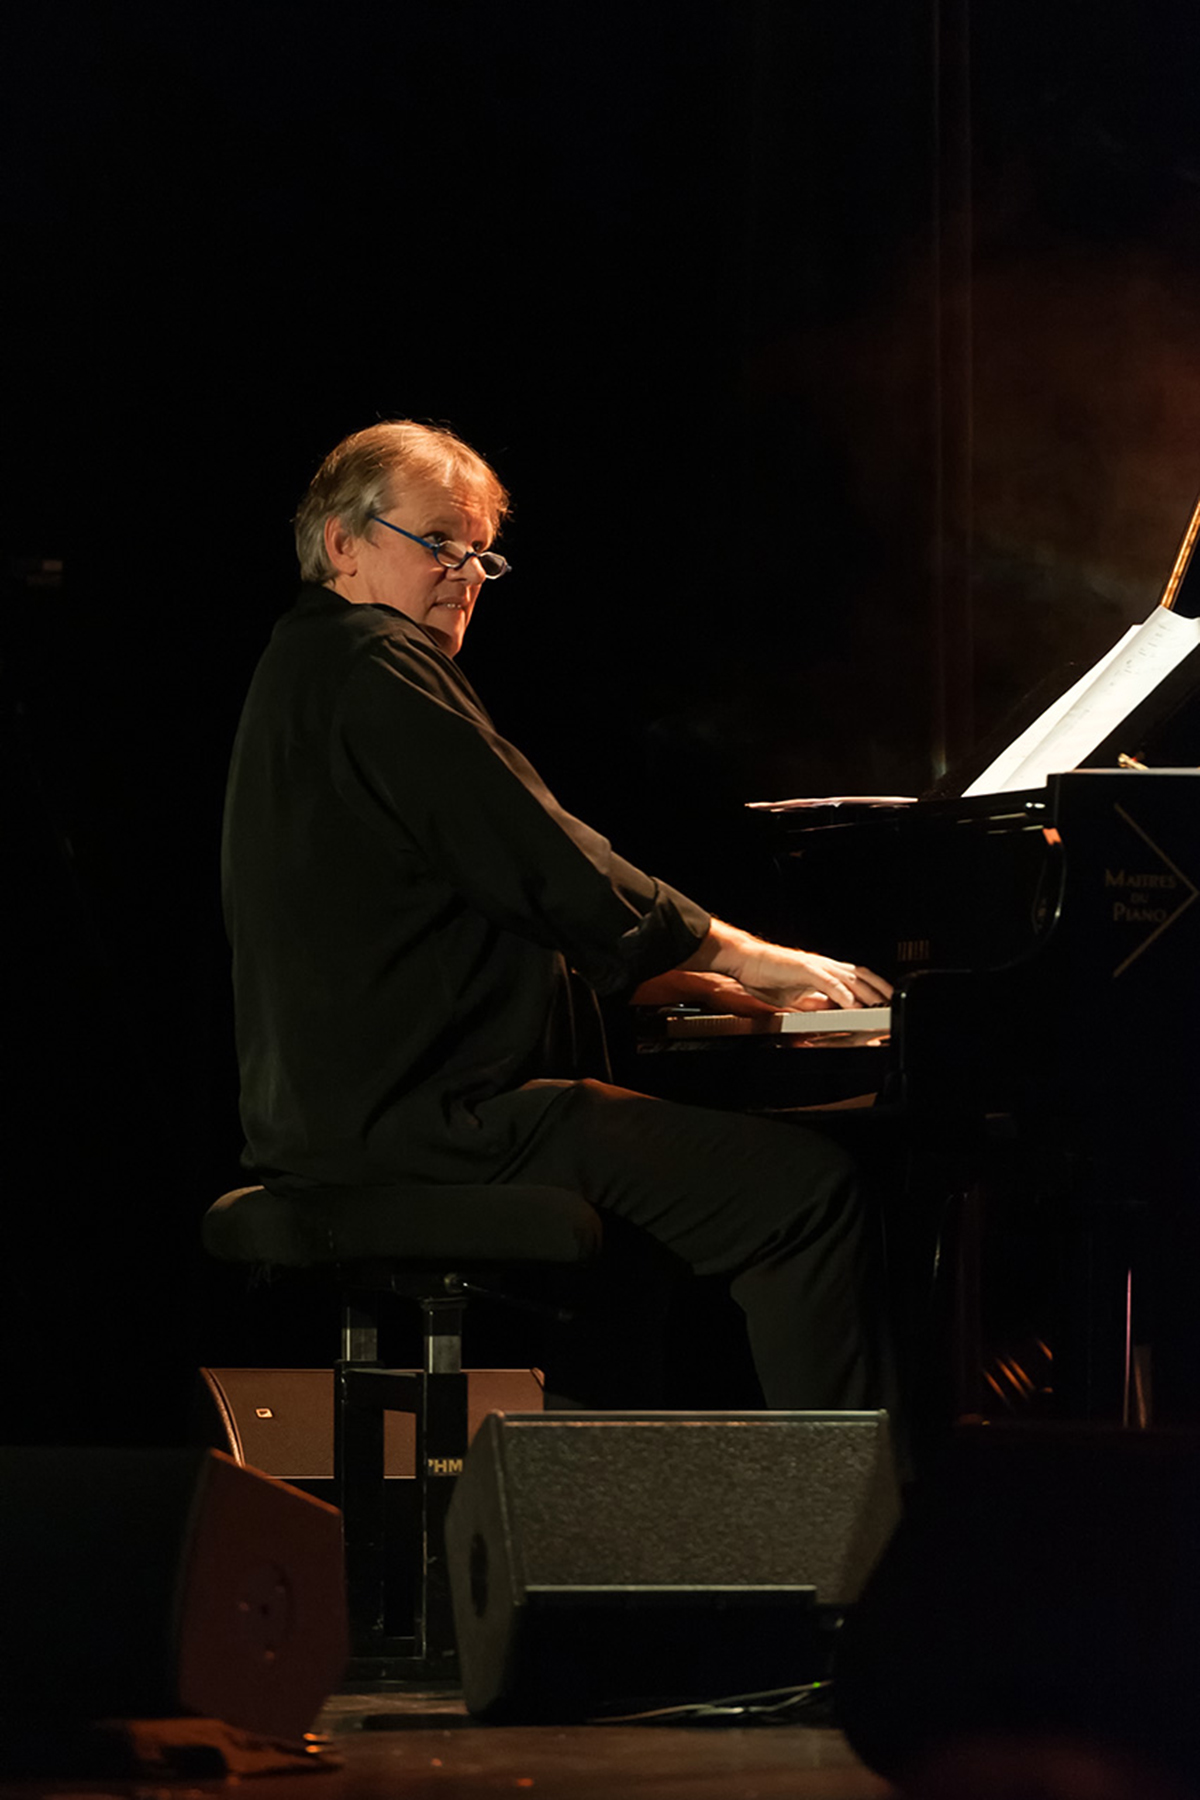 Benoît Sourisse : Piano